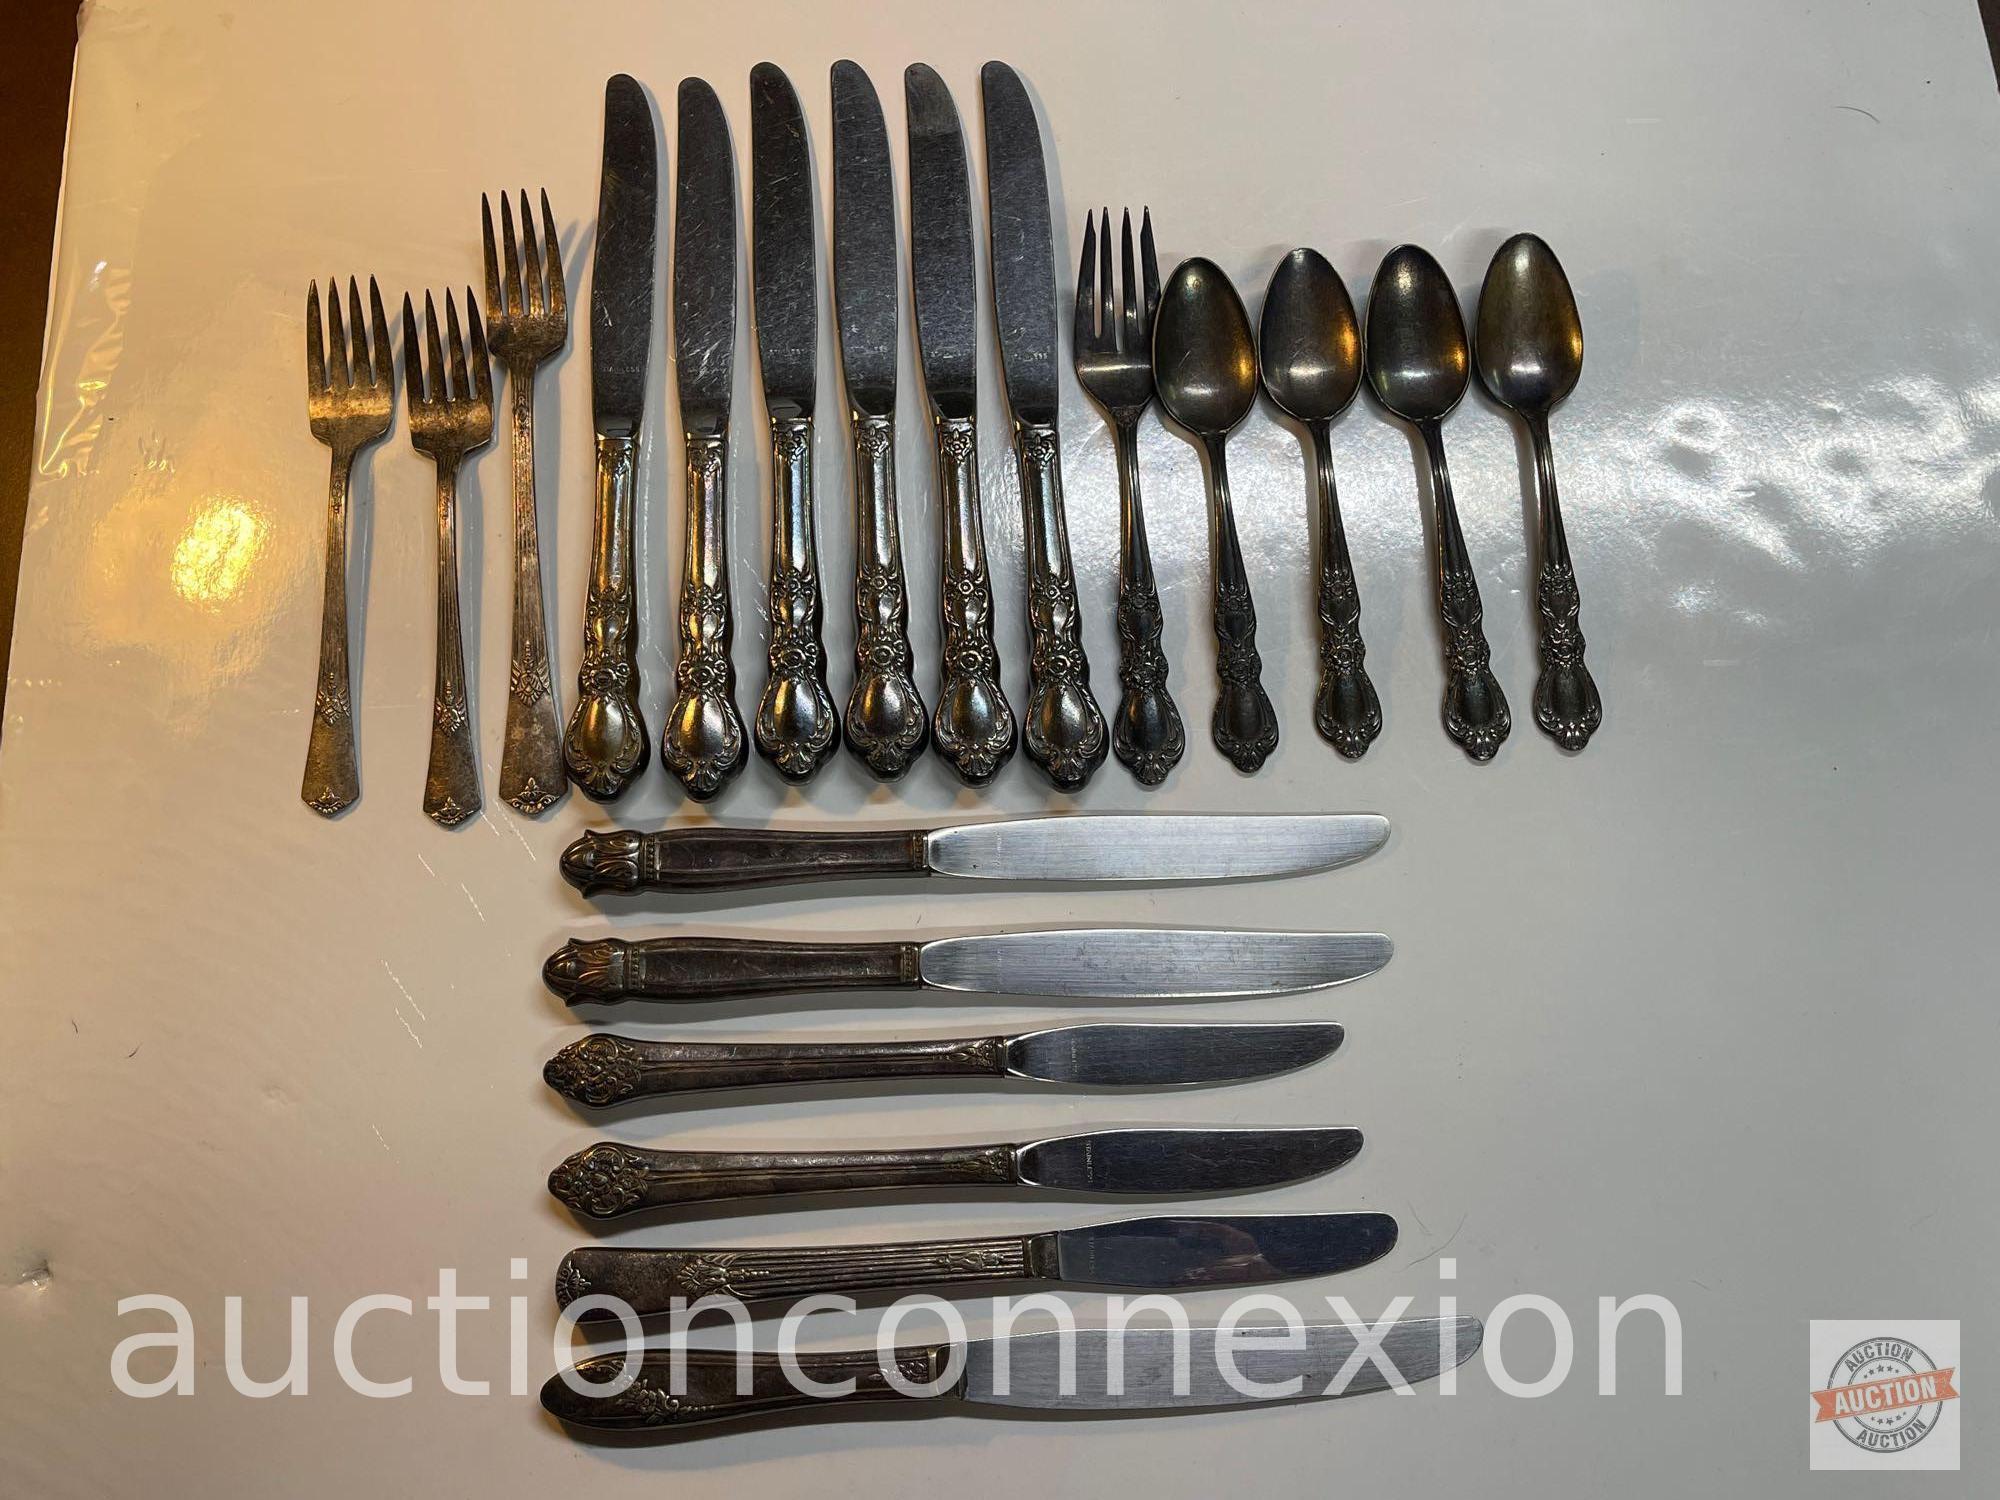 Vintage flatware - 20 pcs - 12 knives, 4 spoons, 4 forks